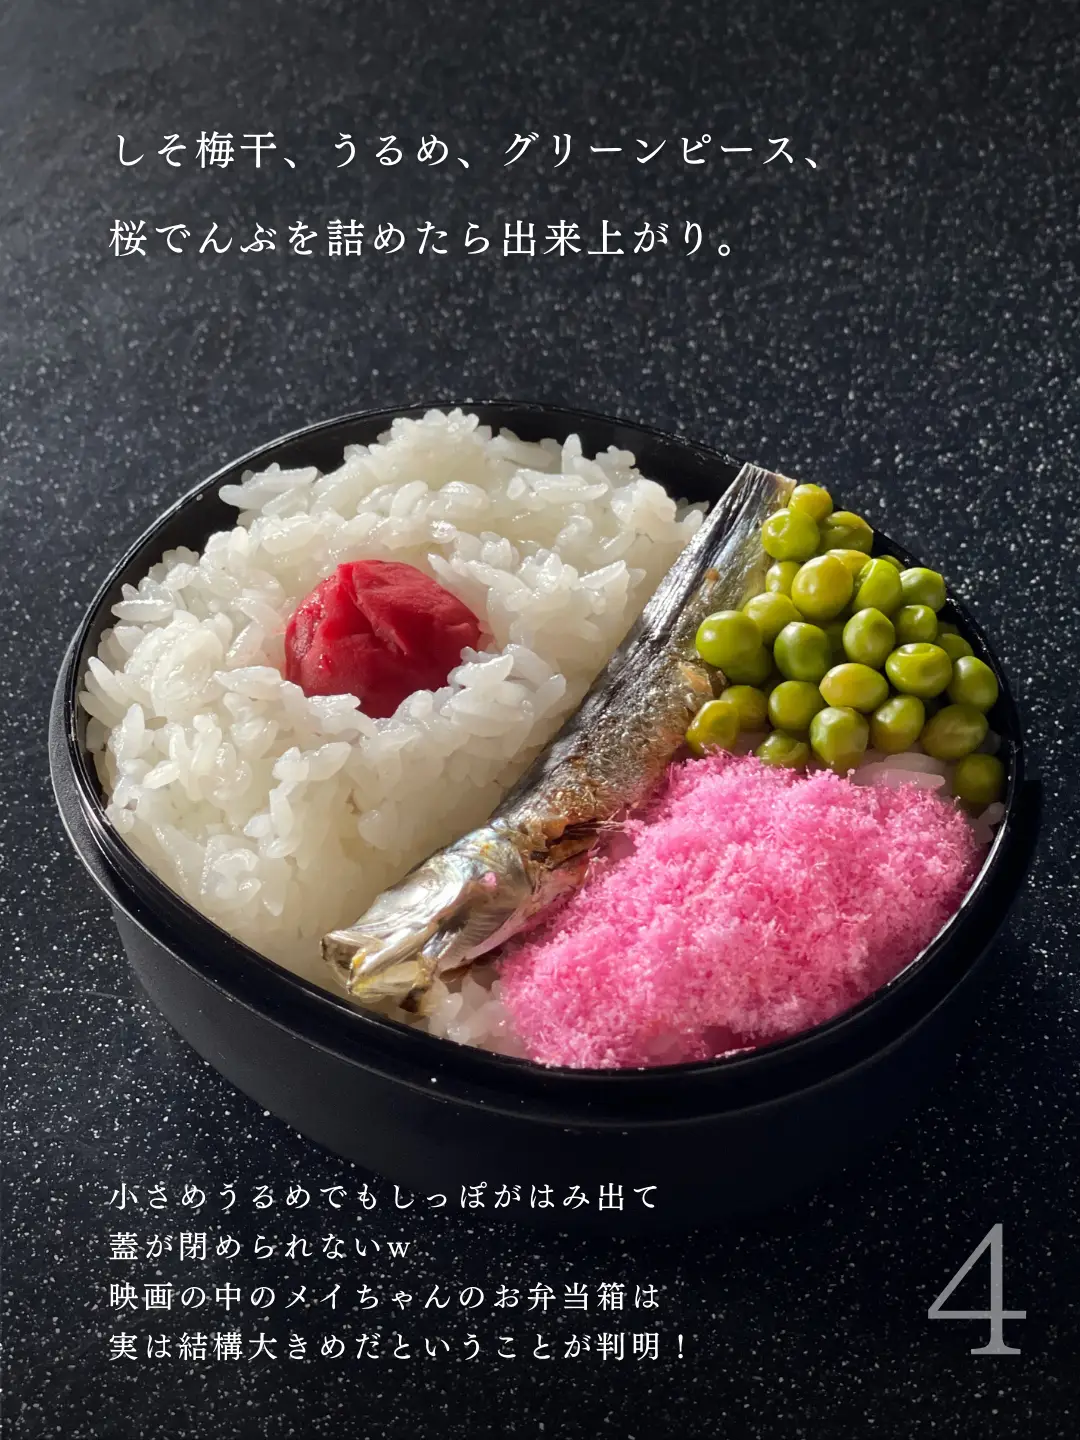 Recipe : Satsuki's Bento from My Neighbor Totoro